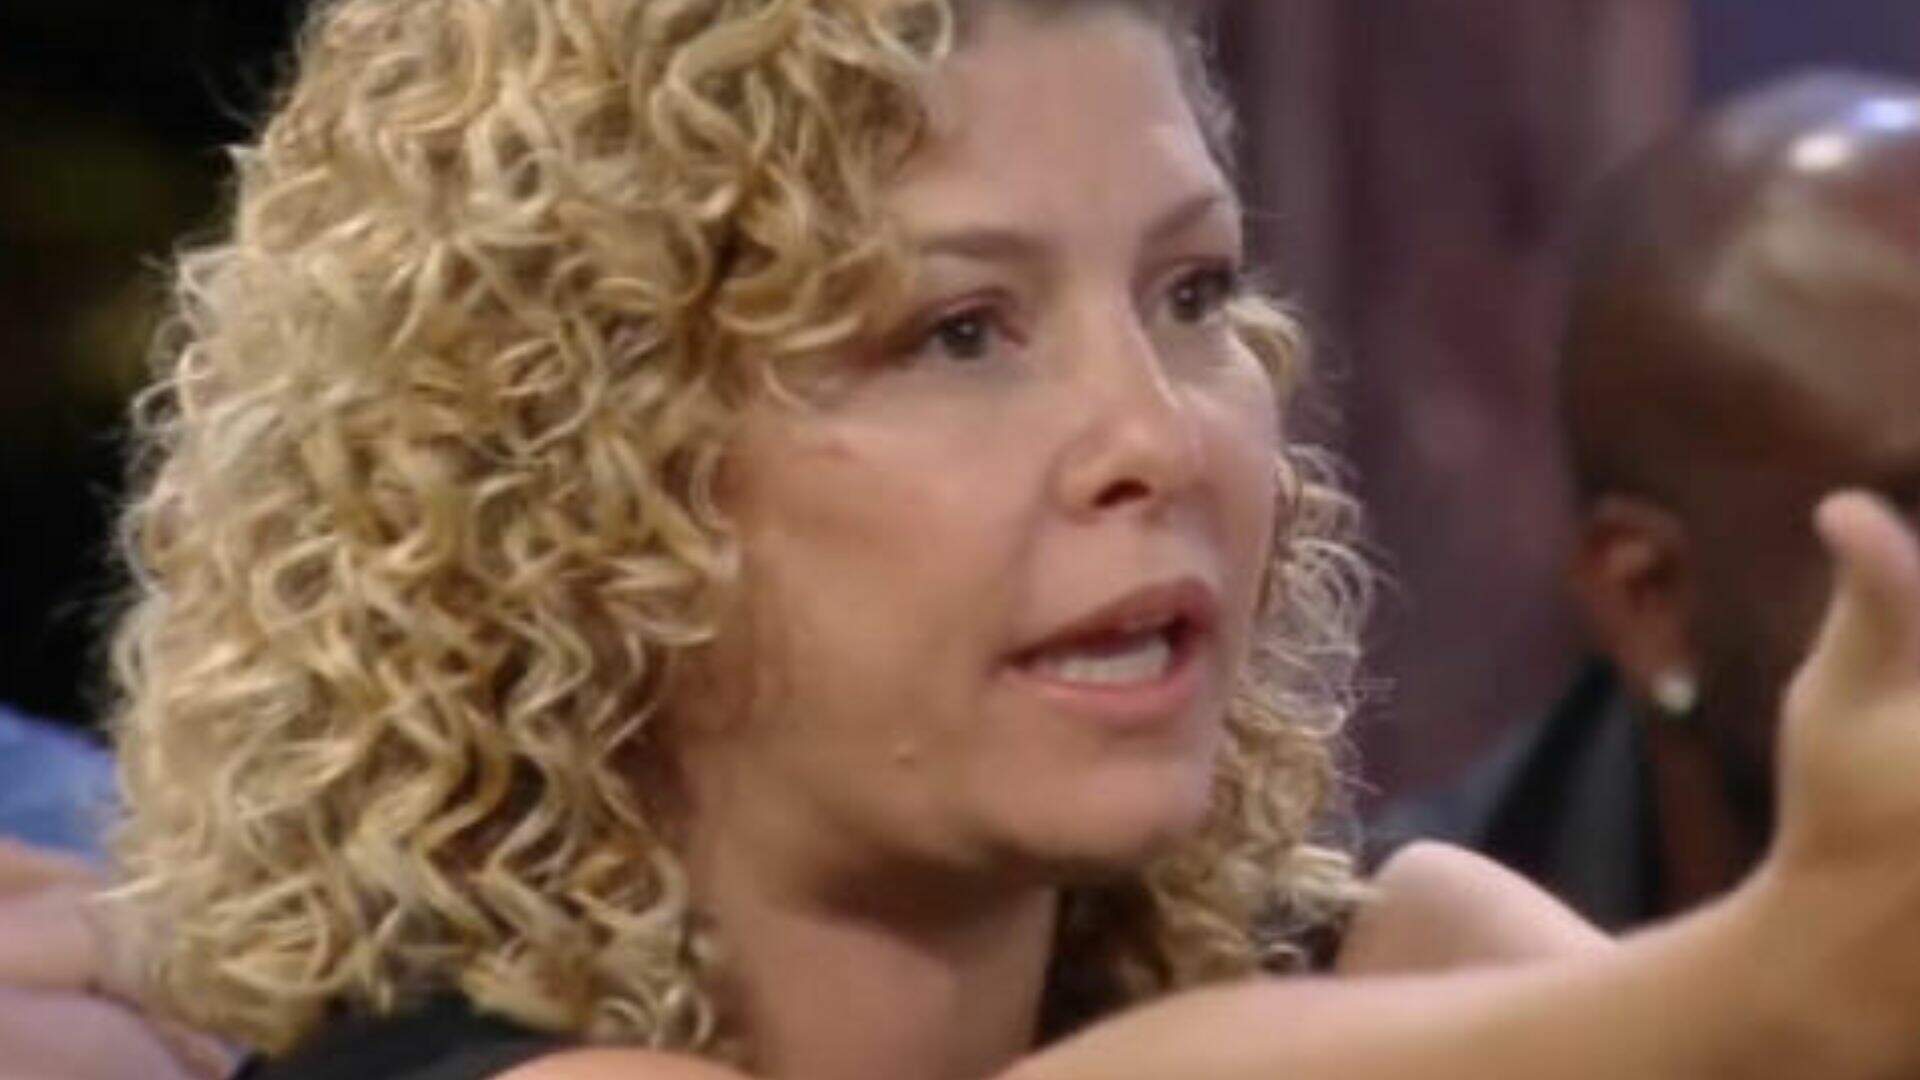 A Fazenda: Decidido! Bárbara Borges revela quem vai indicar à roça e escolha inesperada choca - Metropolitana FM